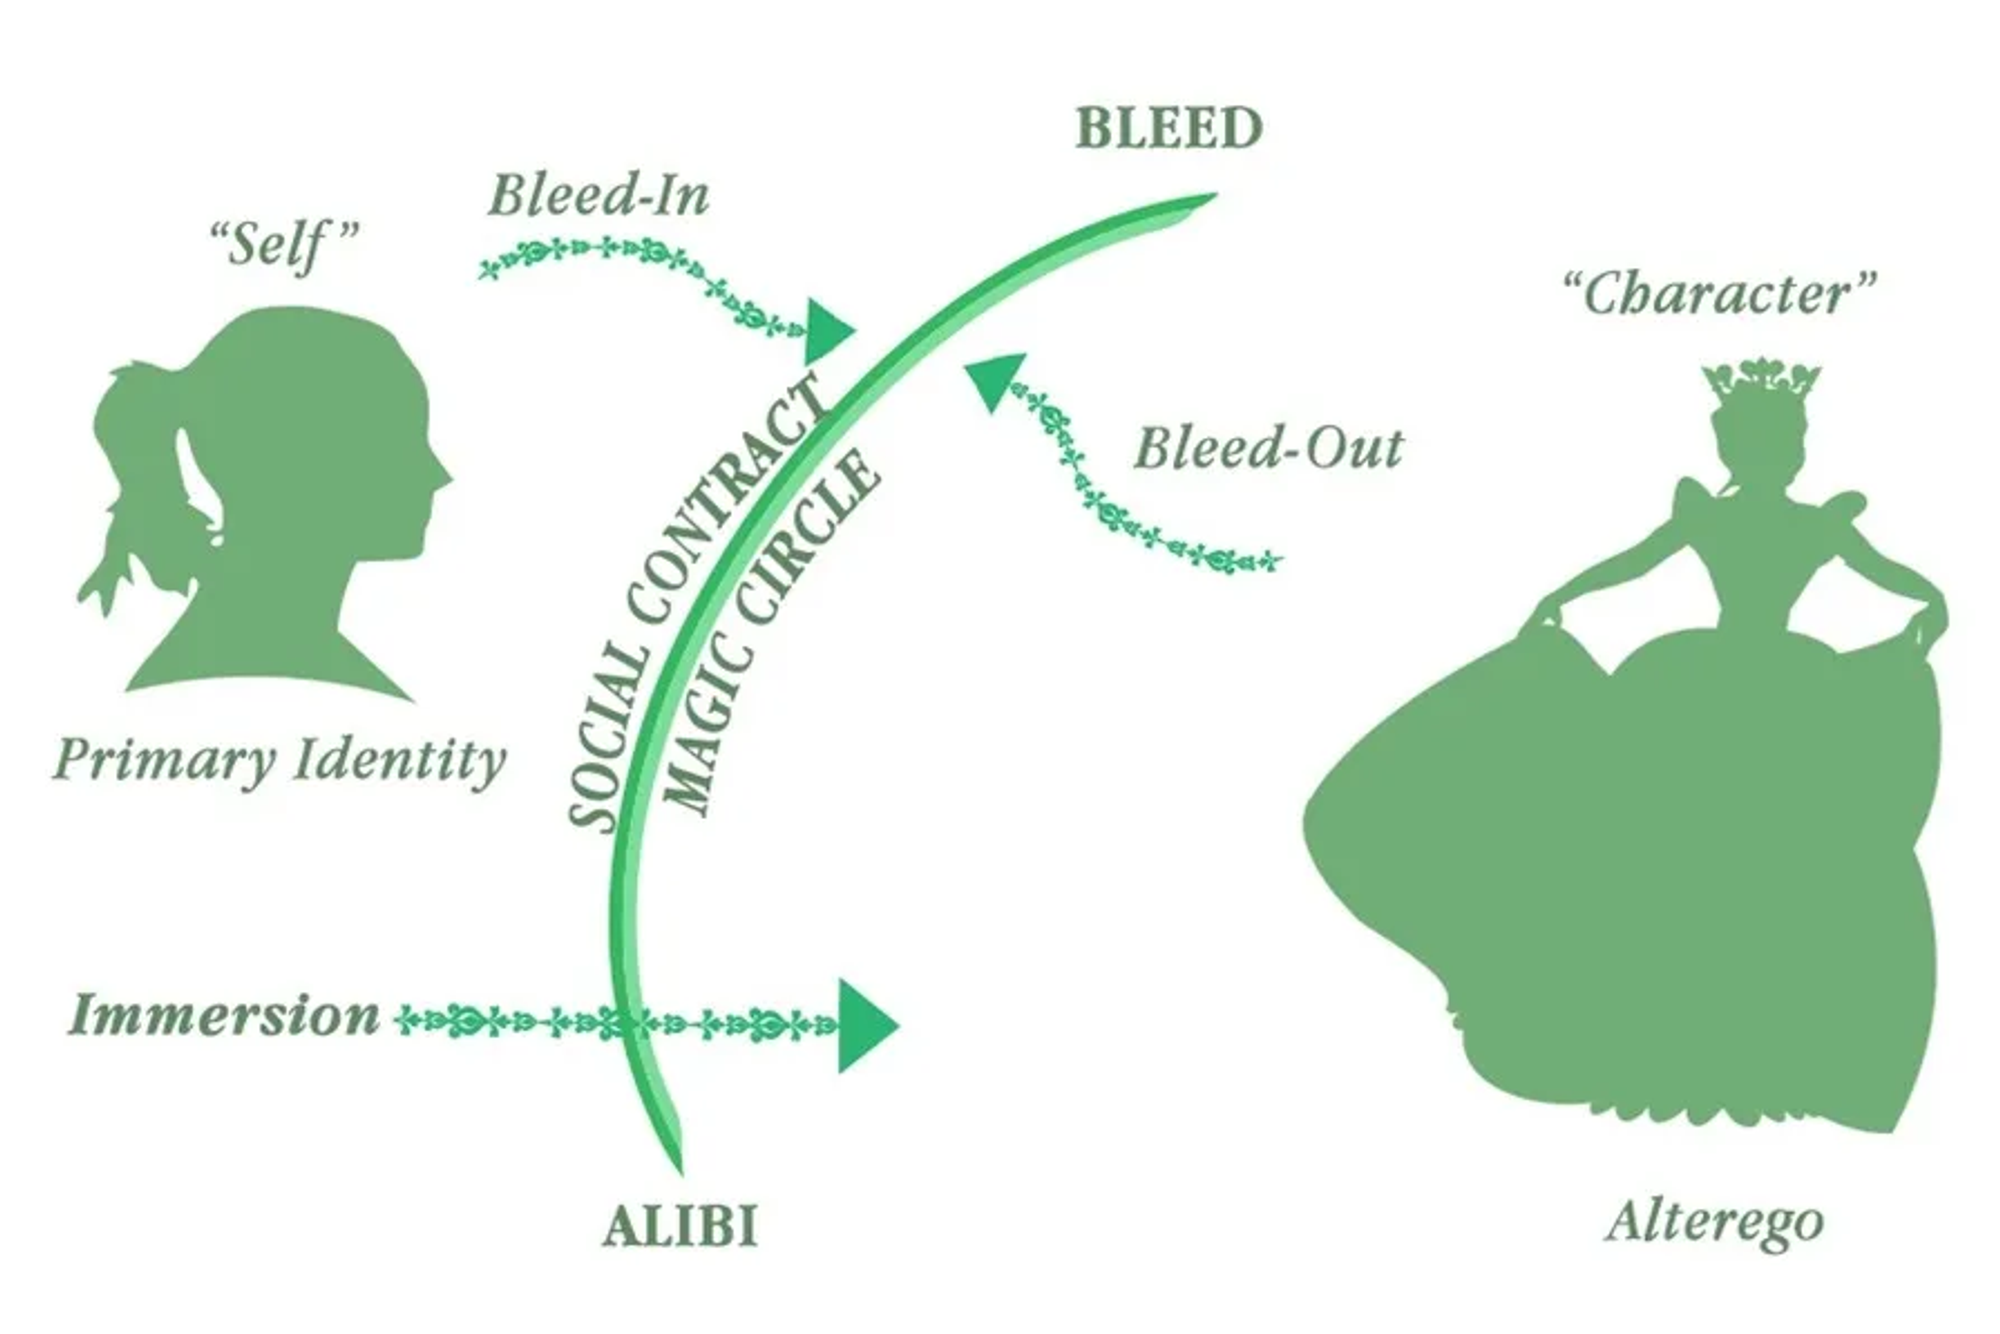 角色扮演研究术语图，包括出血和不在场证明之间的关系。图片由 Mat Auryn 提供。由莎拉·鲍曼设计。